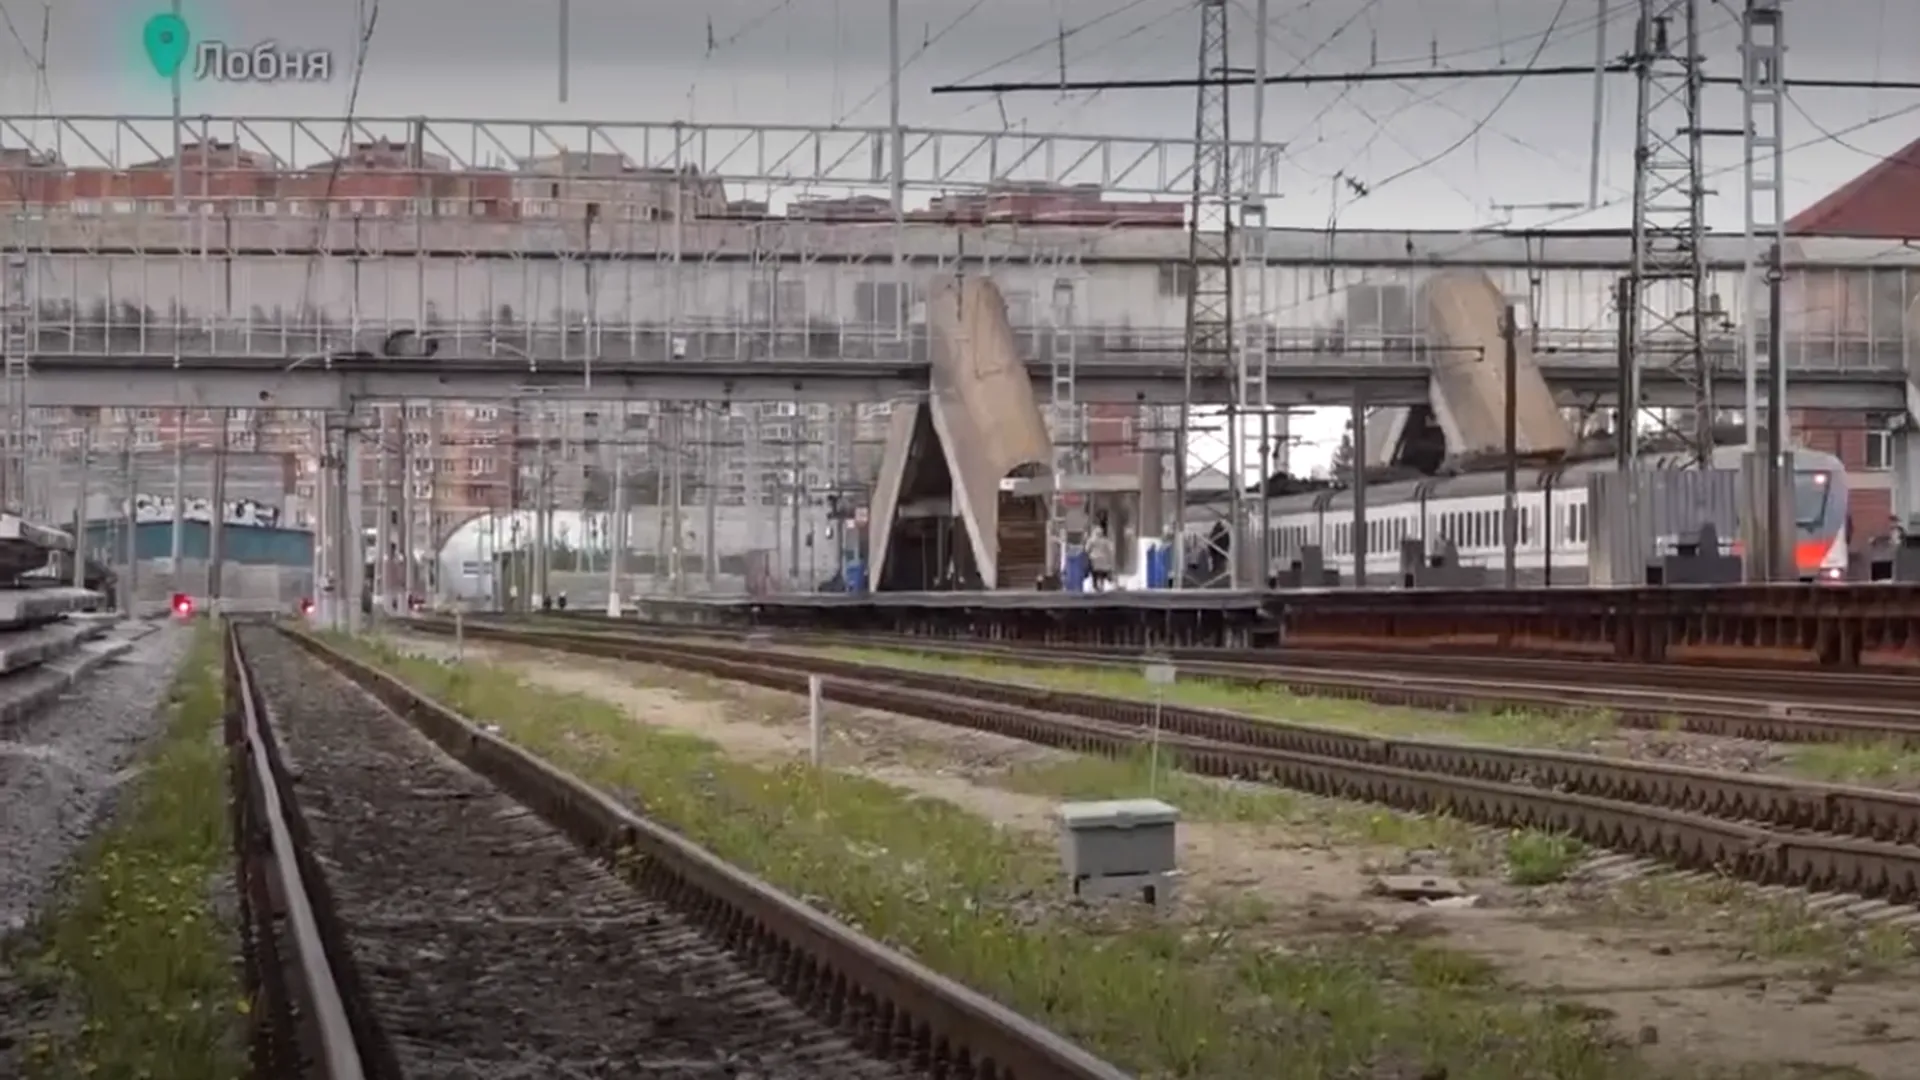 Реконструкция железнодорожной станции началась в Лобне